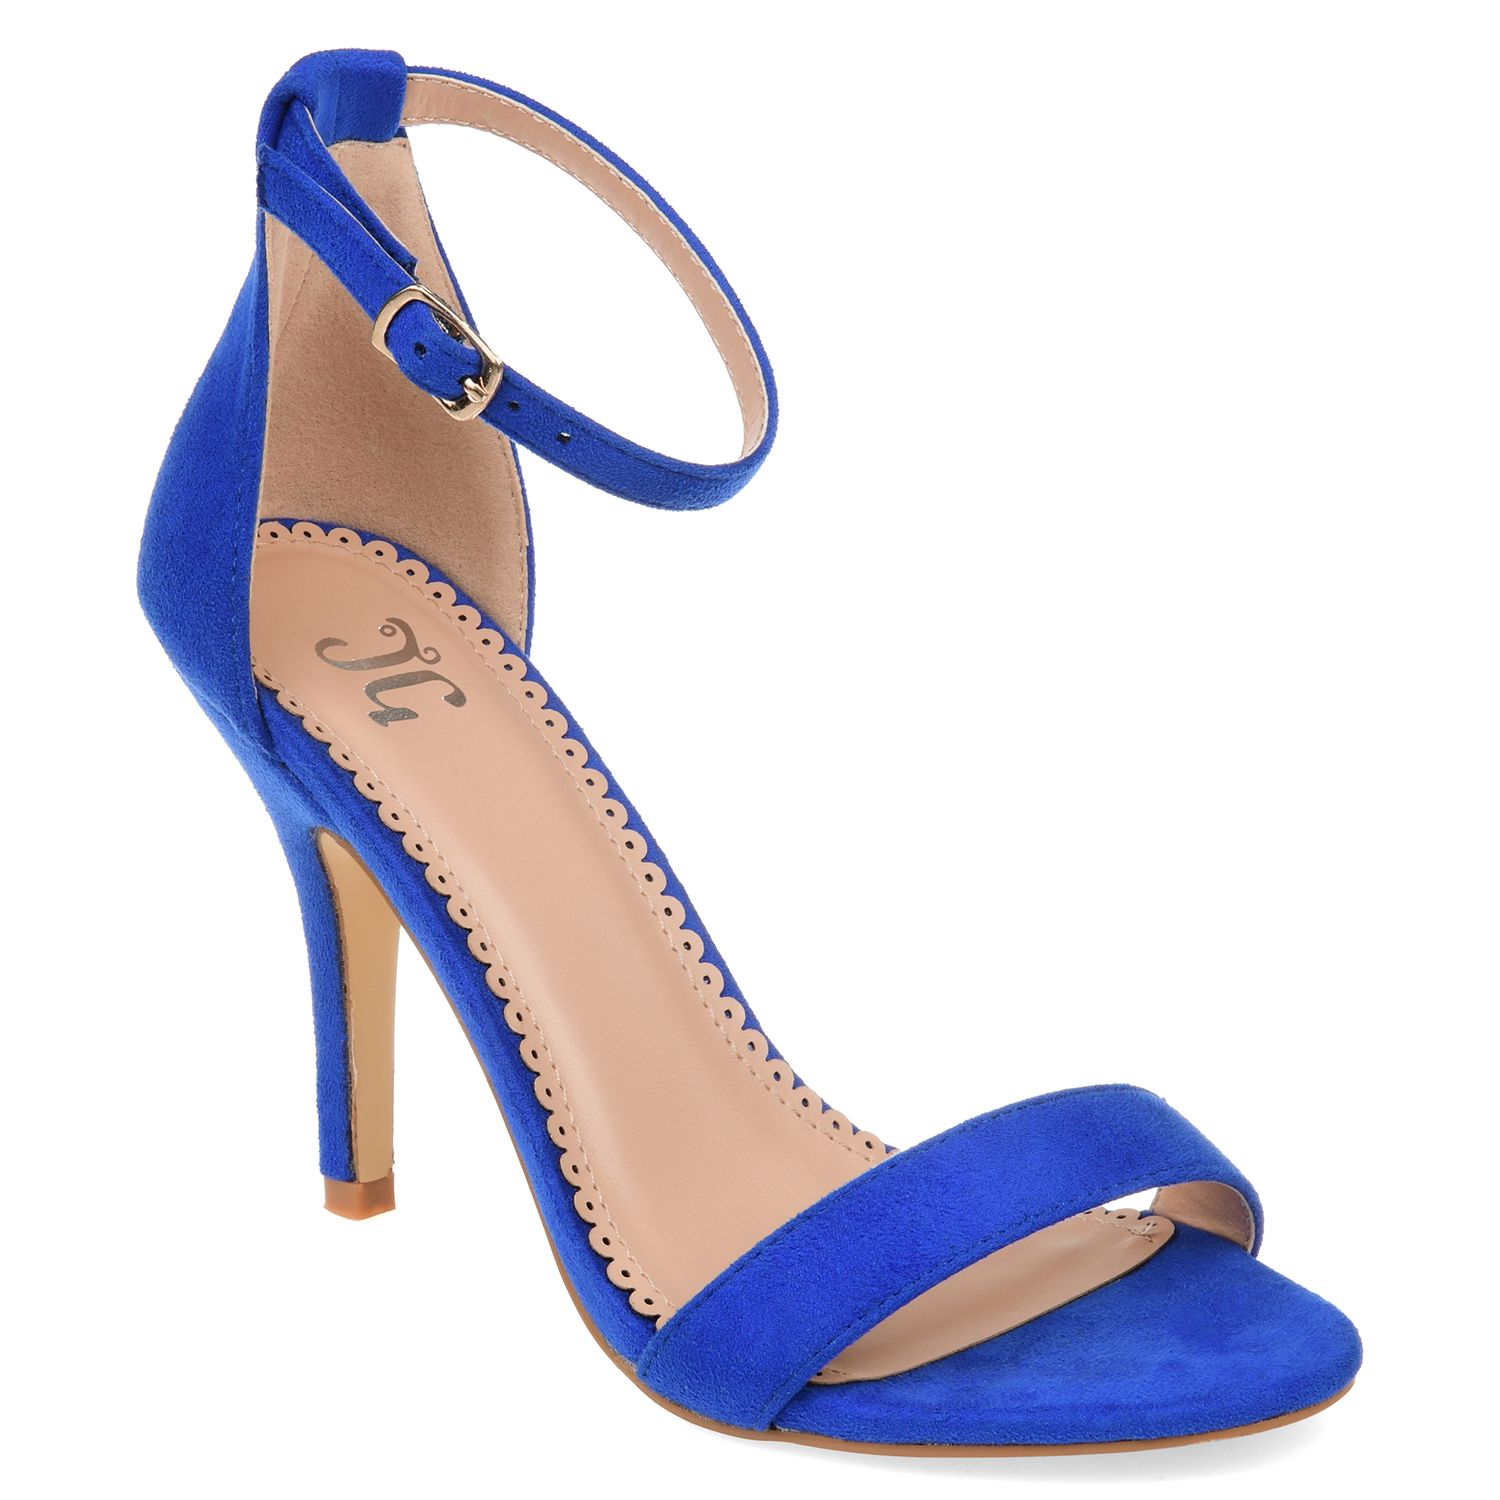 royal blue sandals size 11